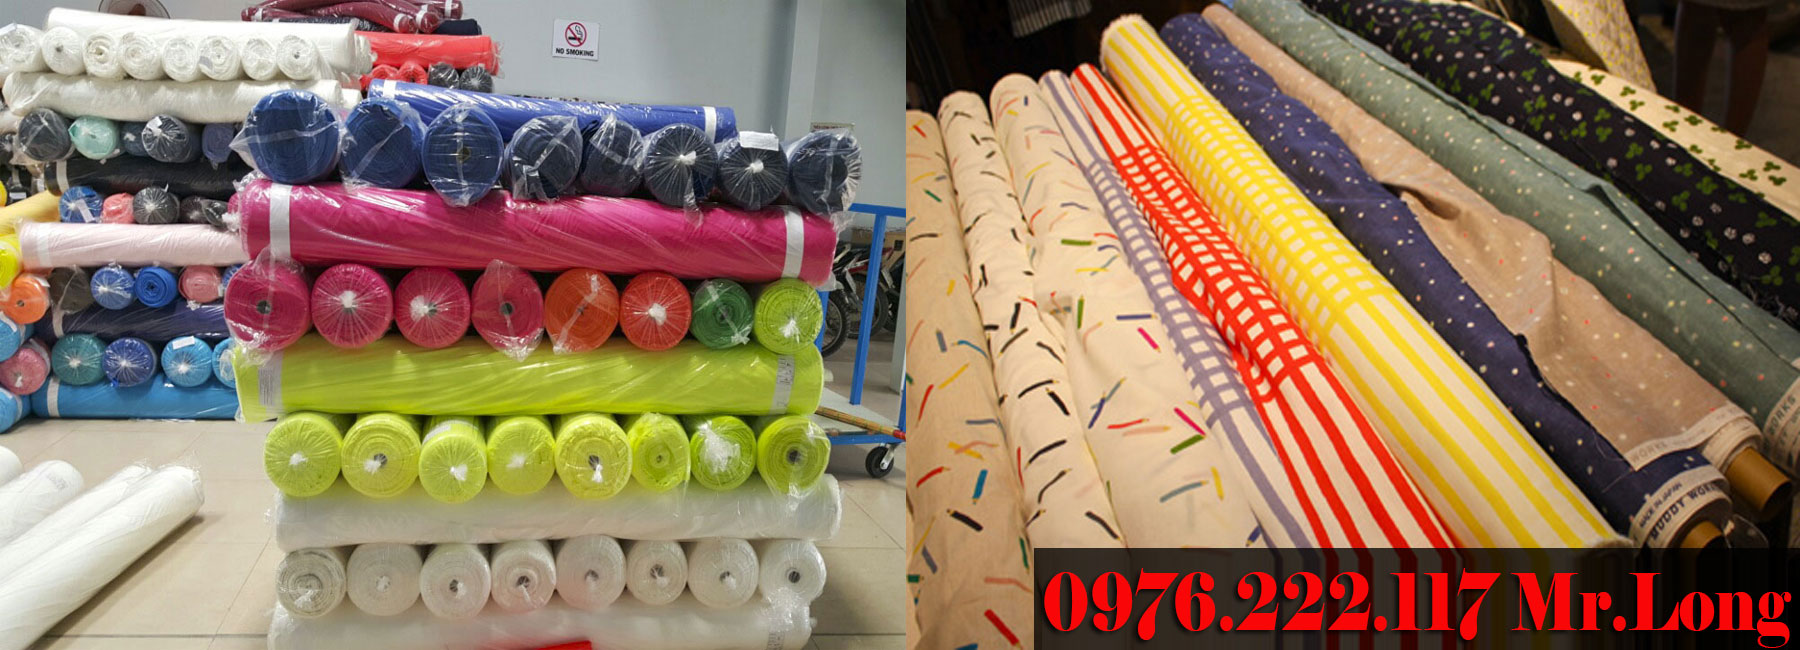 Thu mua vải Nam Hải tại Tphcm và các tỉnh lân cận